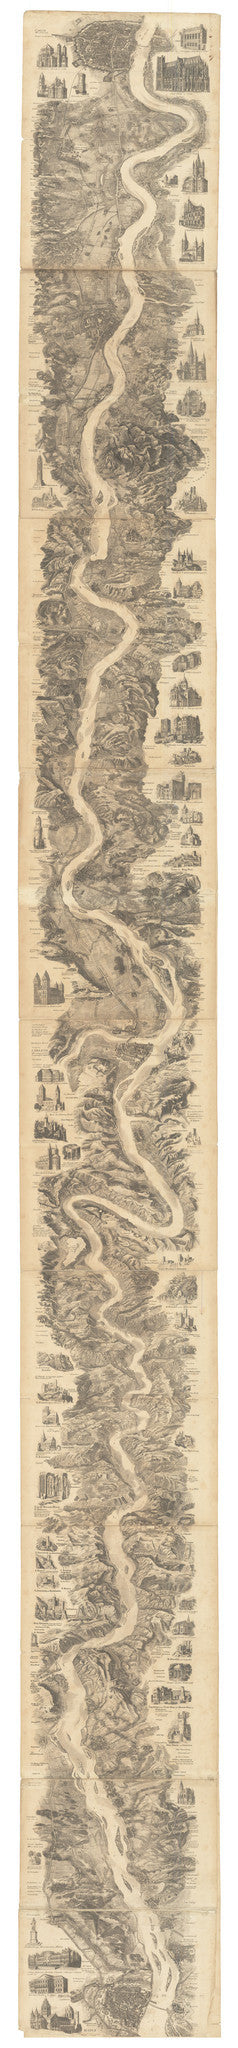 1852 Neues Panorama des Rheins und seiner nächsten Umgebungen von Mainz bis Coeln. Auf’s neue nach der Natur gezeichnet und mit den interessantesten architektonsichen und geshichtlichen Denkmälern als Randbilder geziert